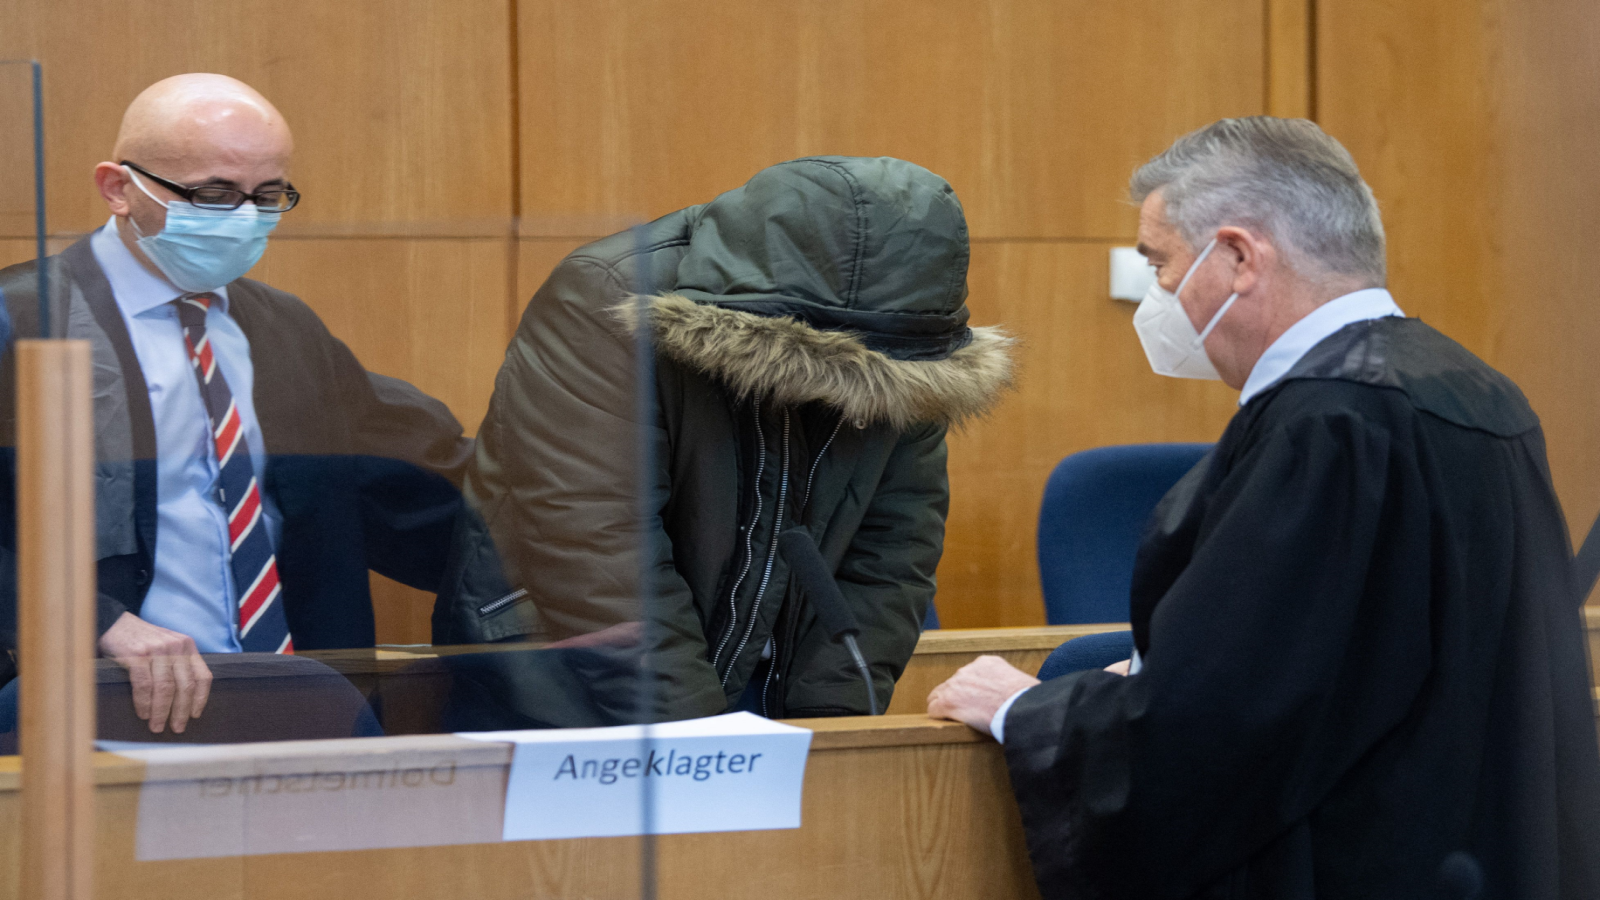 فرانكفورت:الطبيب السوري أمام المحكمة..يواجه 18 إتهاماً بالقتل والتعذيب